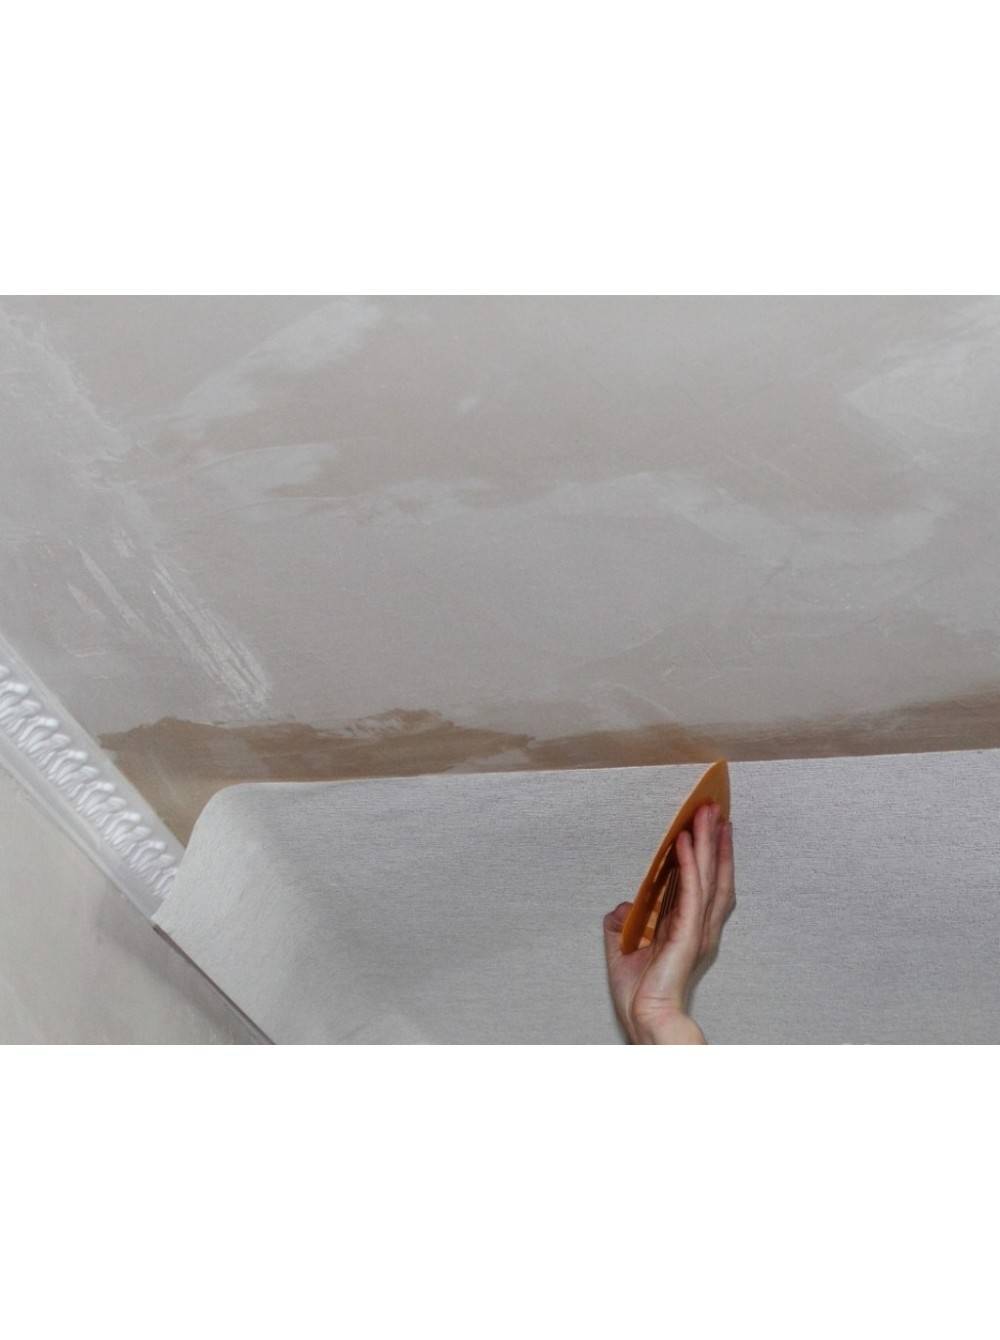 Как клеить стеклохолст на потолок своими руками